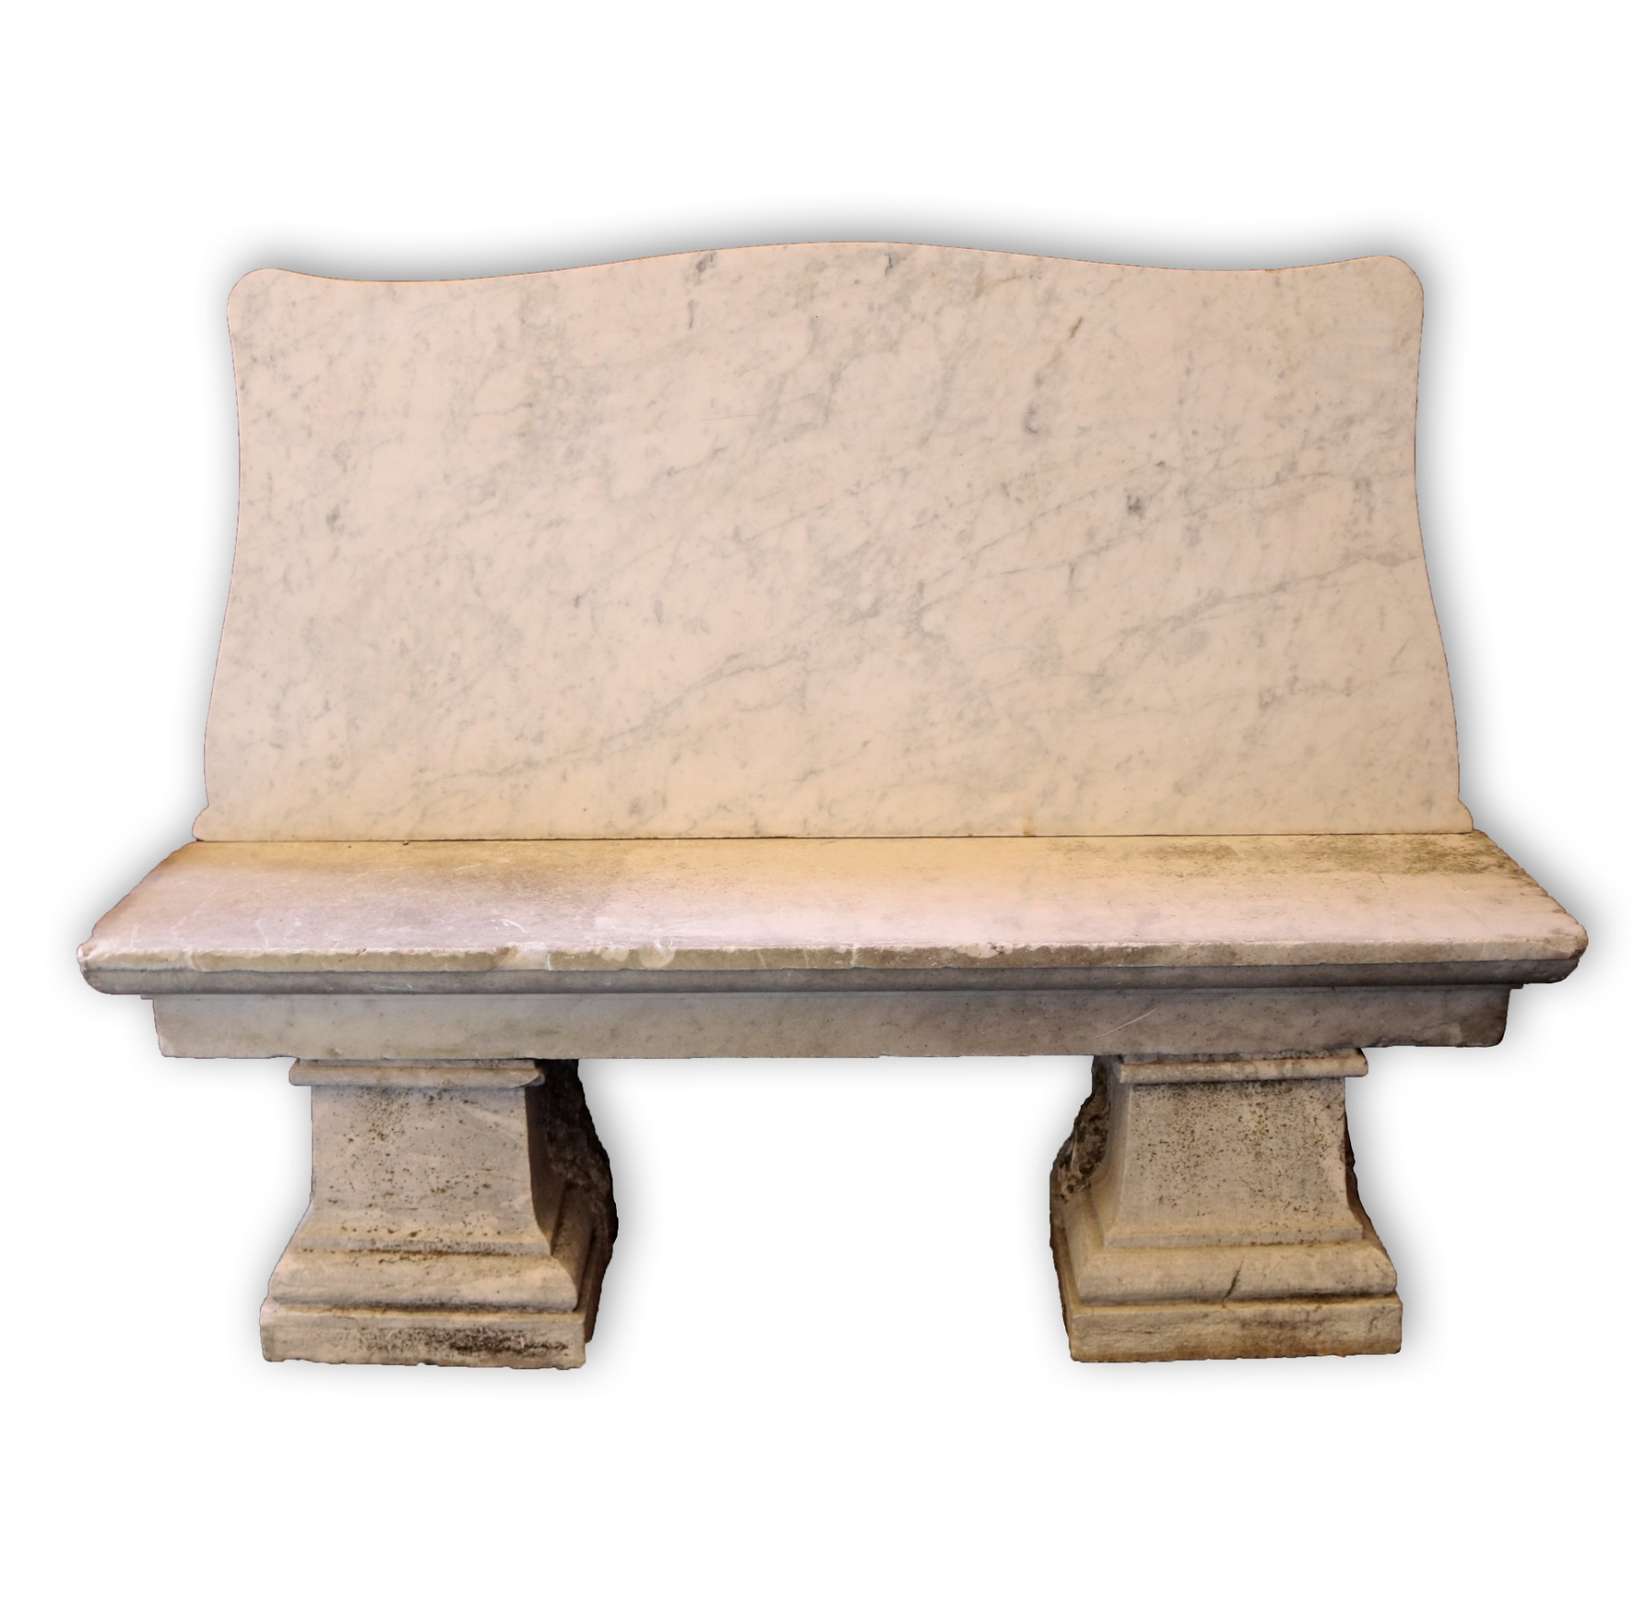 Antica panchina in marmo. Epoca 1800. - Panchine e Sedie - Arredo Giardino - Prodotti - Antichità Fiorillo